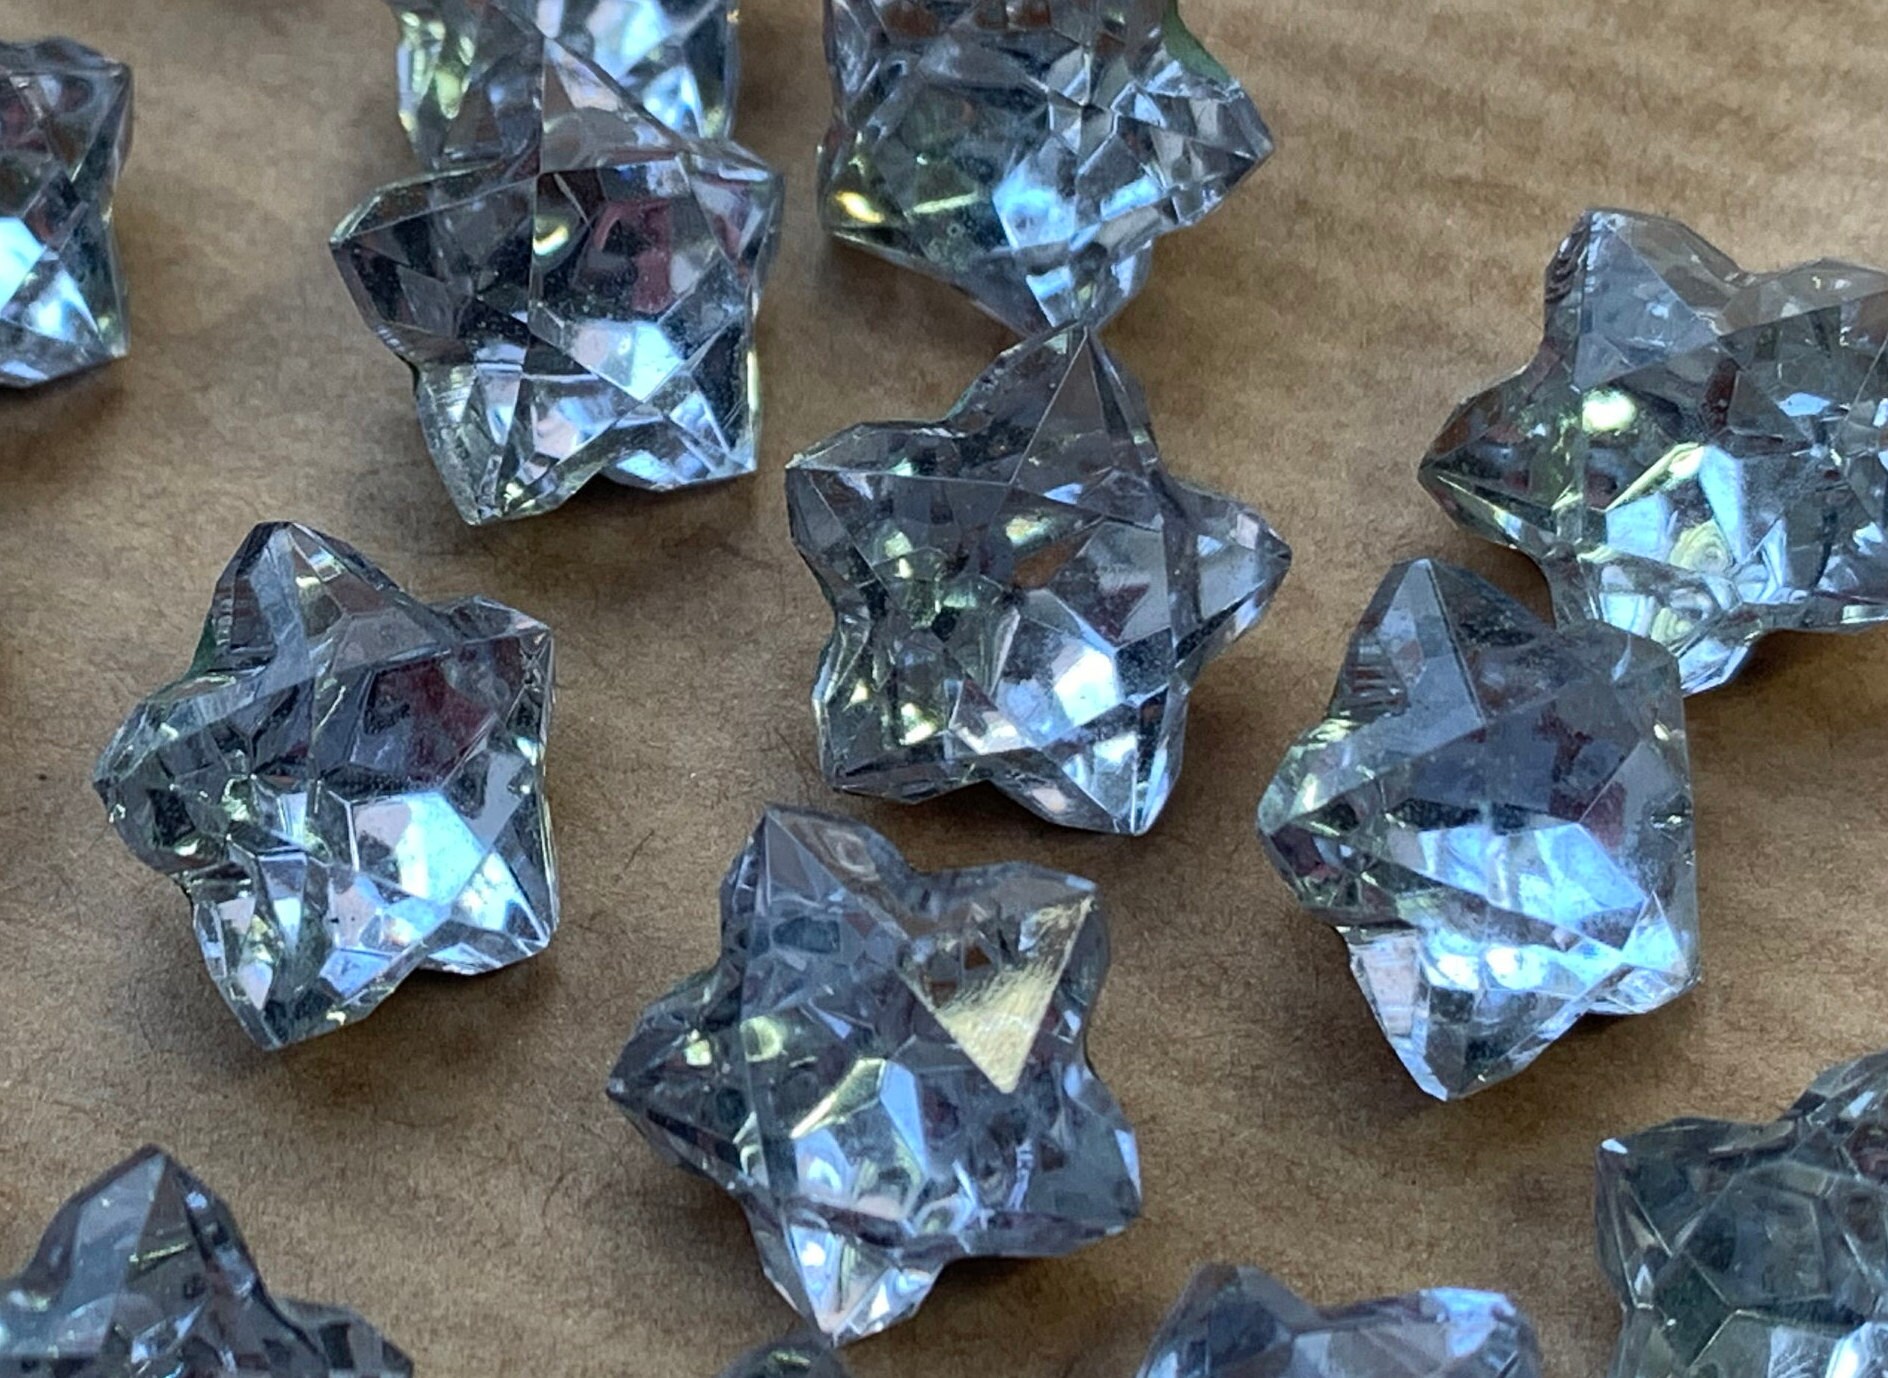 8mm light aqua blue 10 glass jewels star